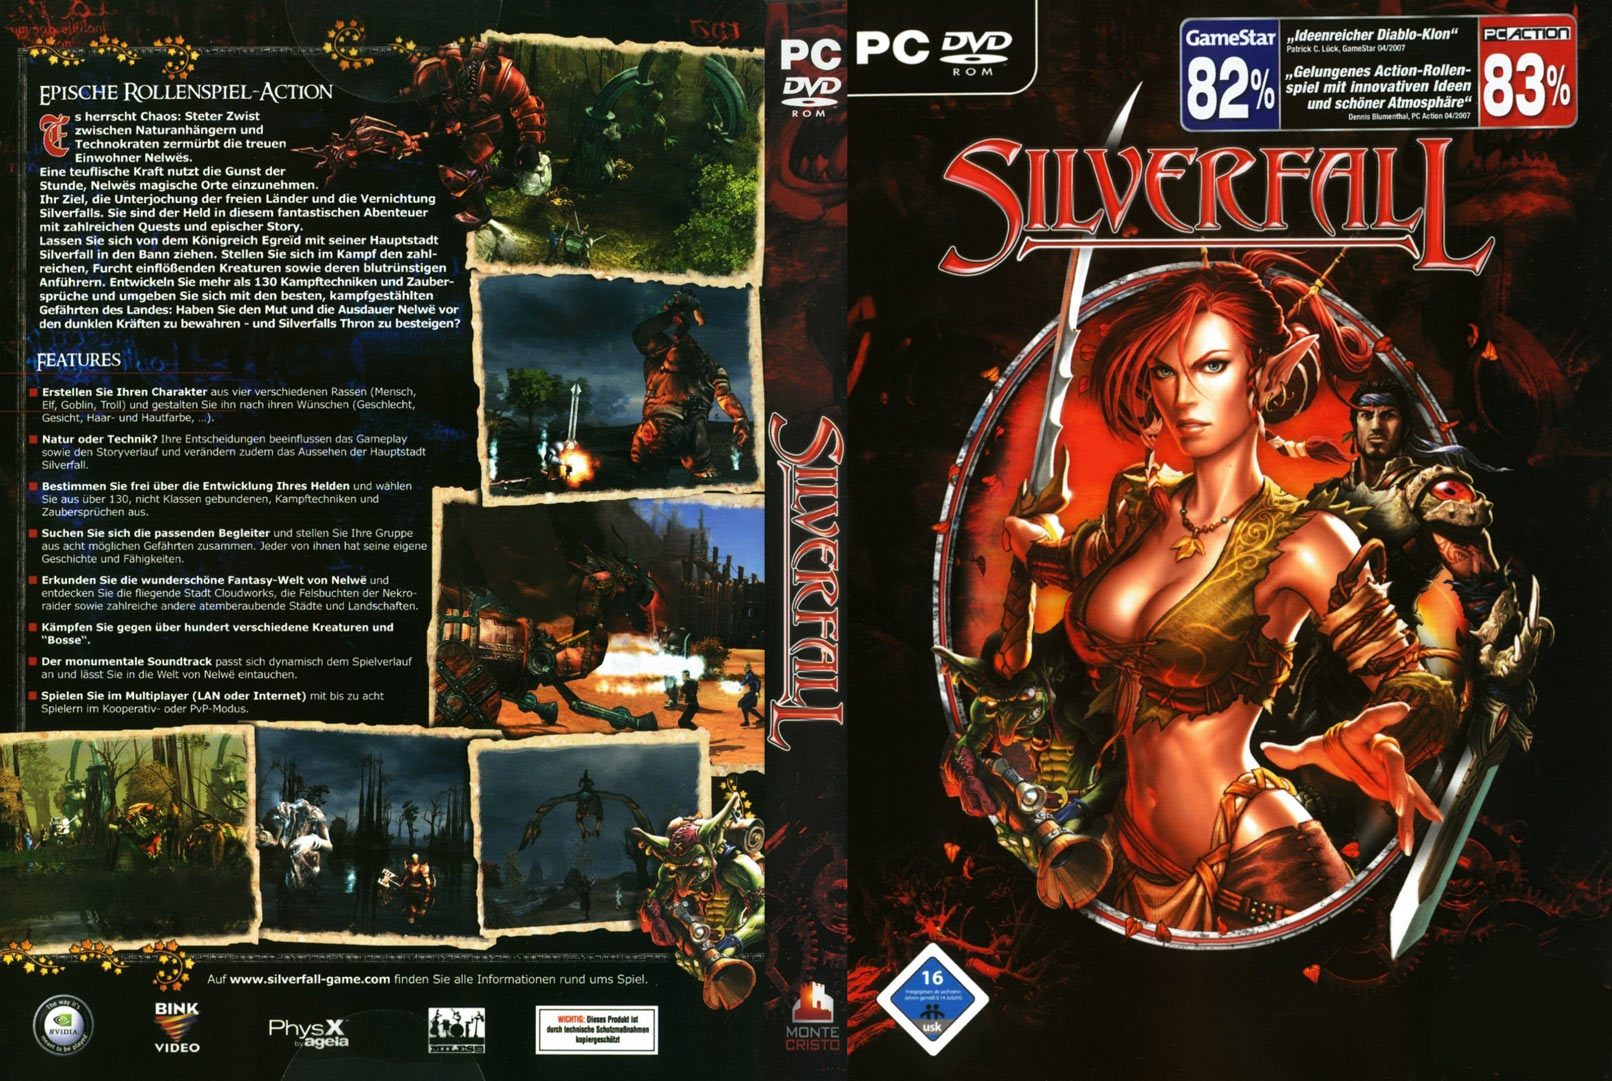 Silverfall - DVD obal